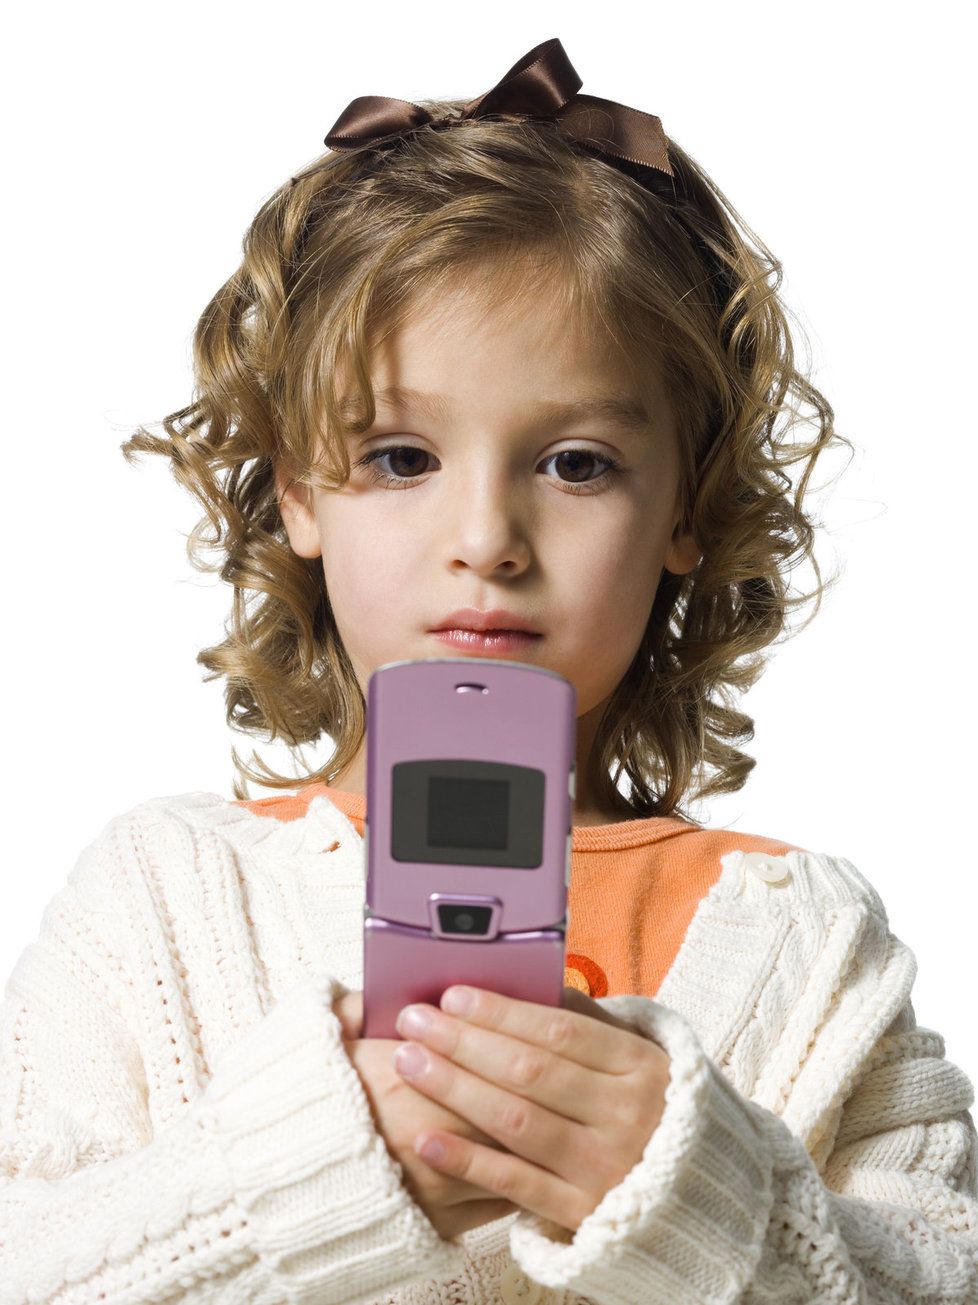 Téměř tři čtvrtiny dětí u nás už mají mobily.(Ilustrační foto.)